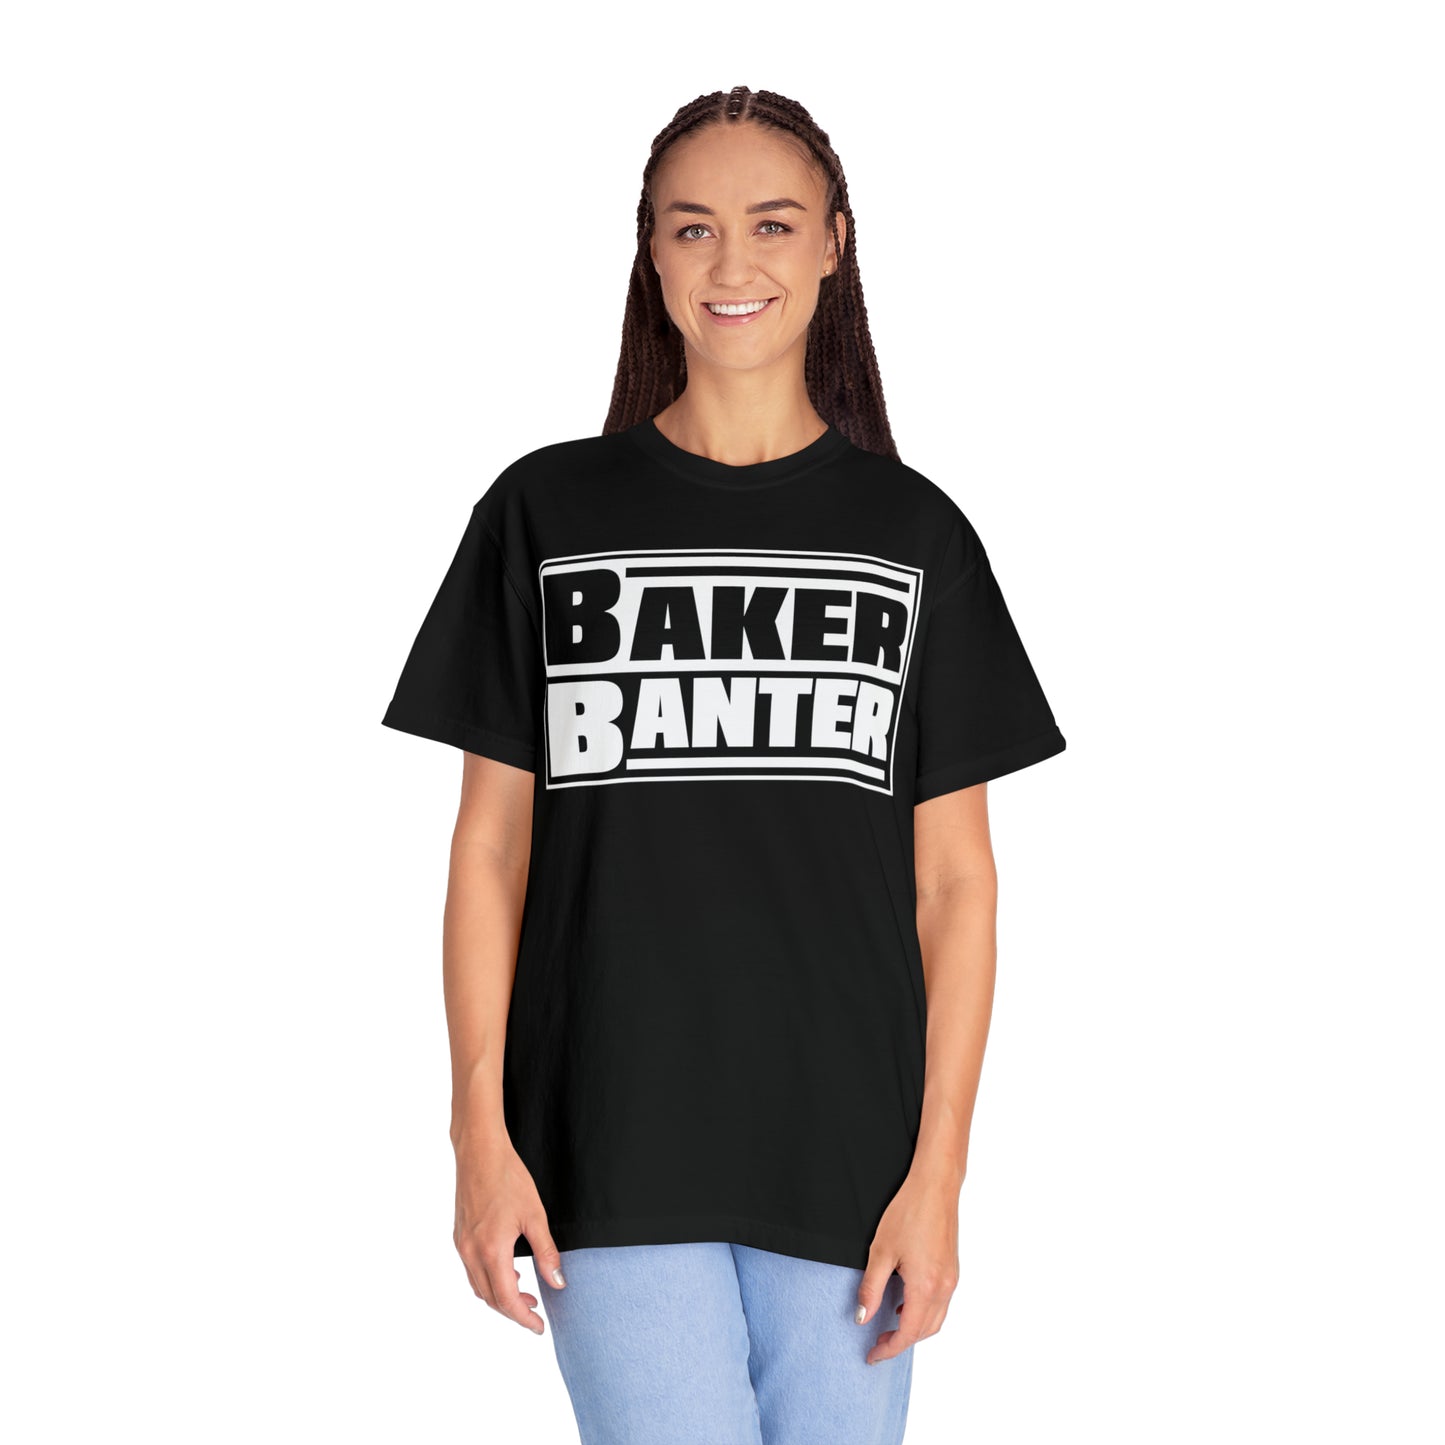 Baker Banter Friday Night Wrestling Unisex Tee - White/Blue, Black/White